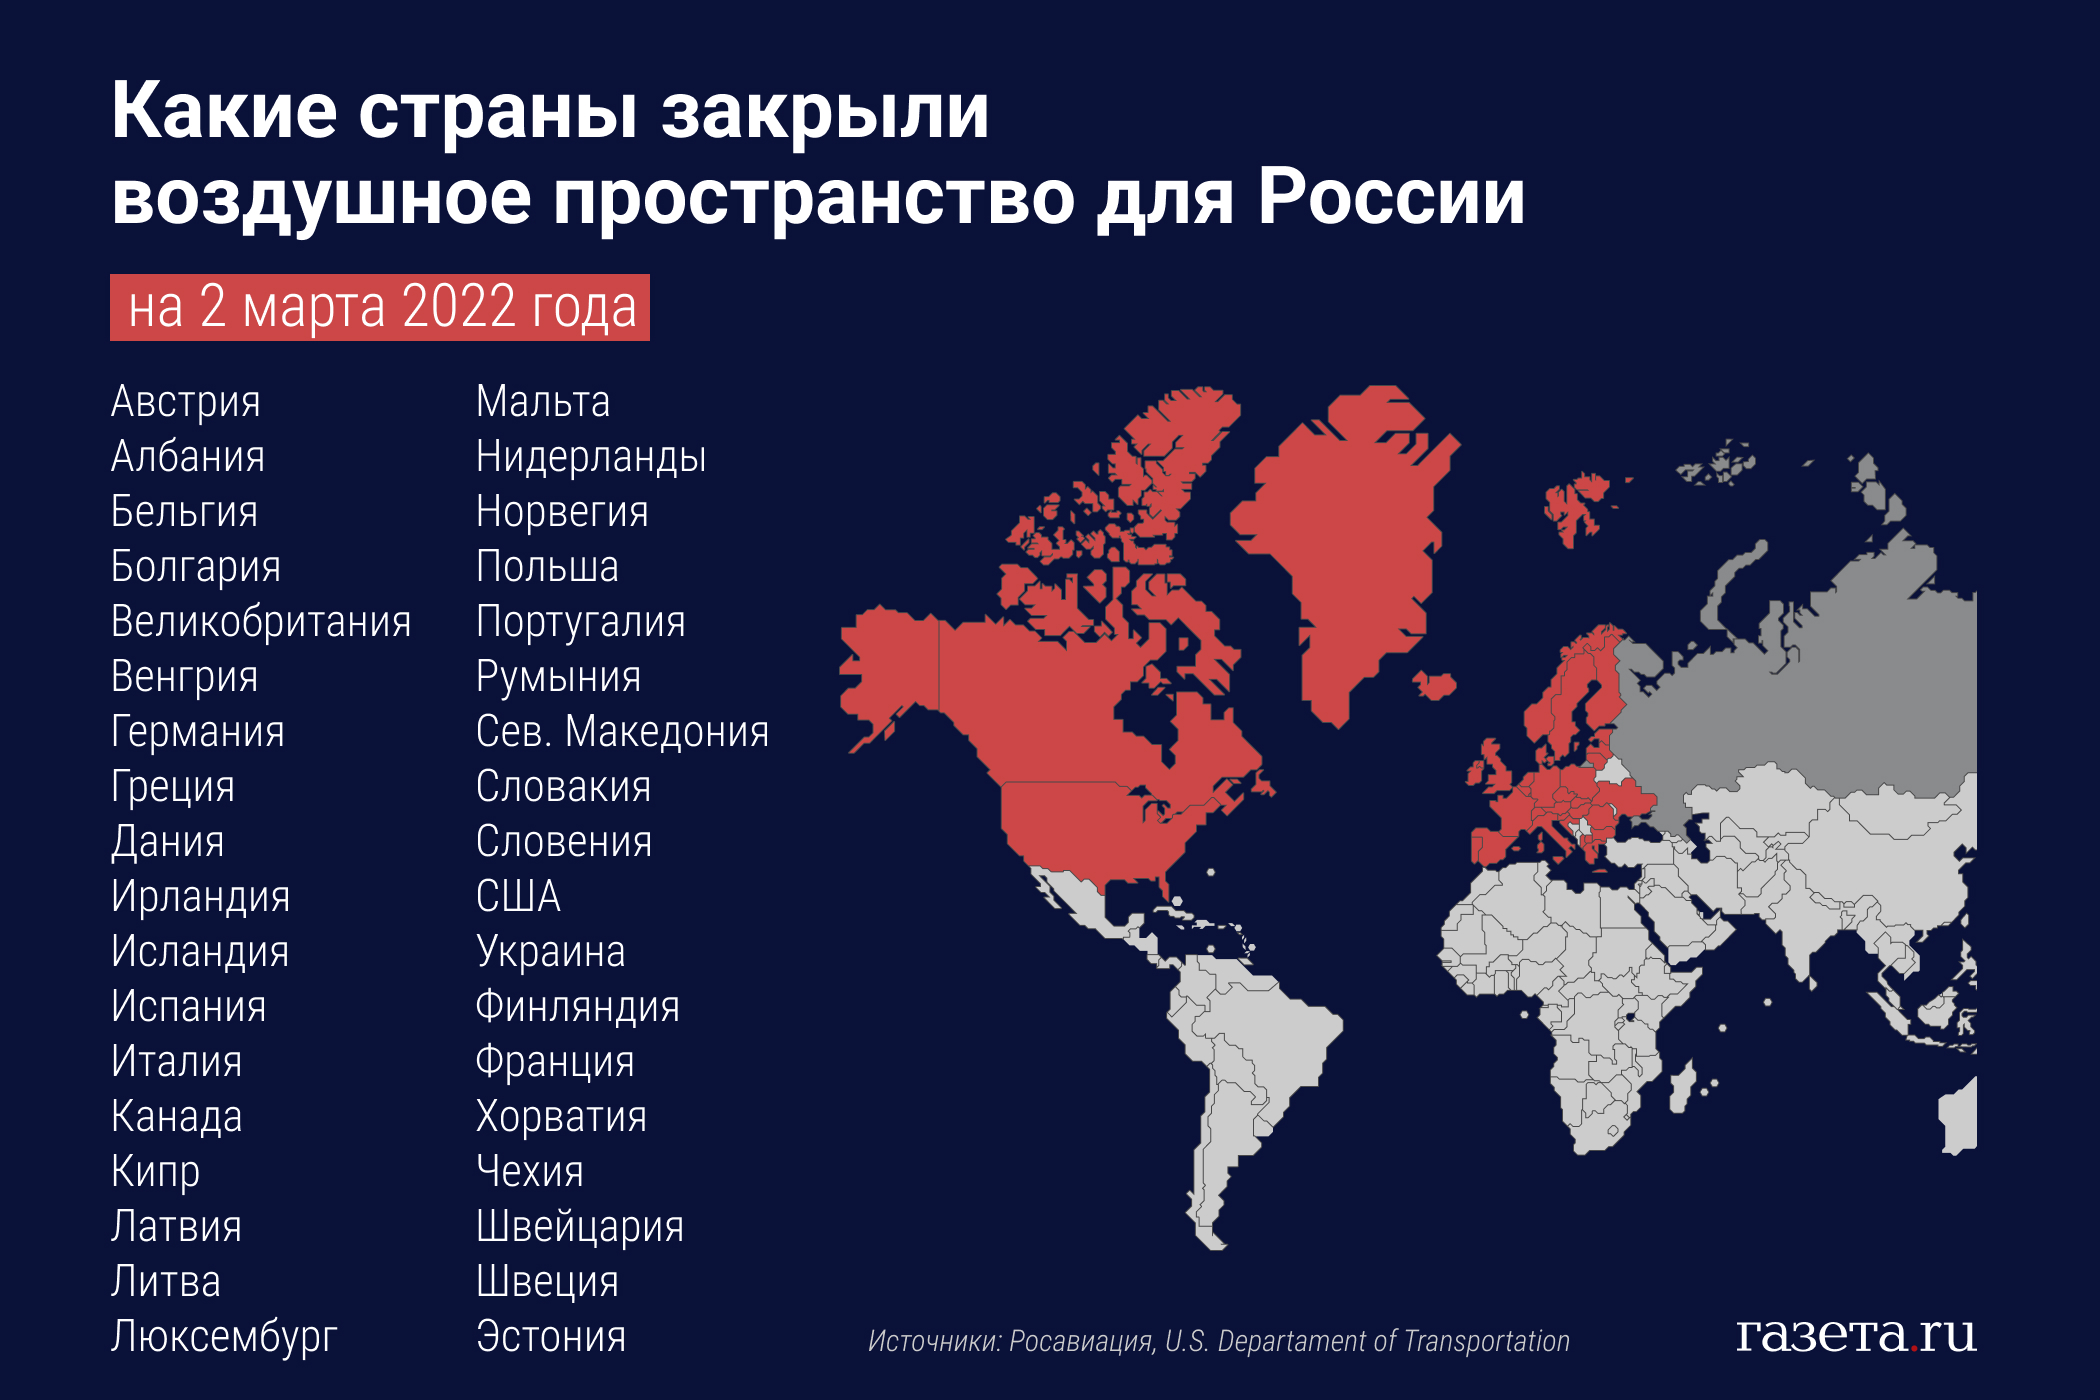 Санкции каких стран против рф. Закрытие воздушного пространства для России. Закрытое воздушное пространство для России. Какие страны закрыли воздушное пространство. Карта стран которые закрыли воздушное пространство.